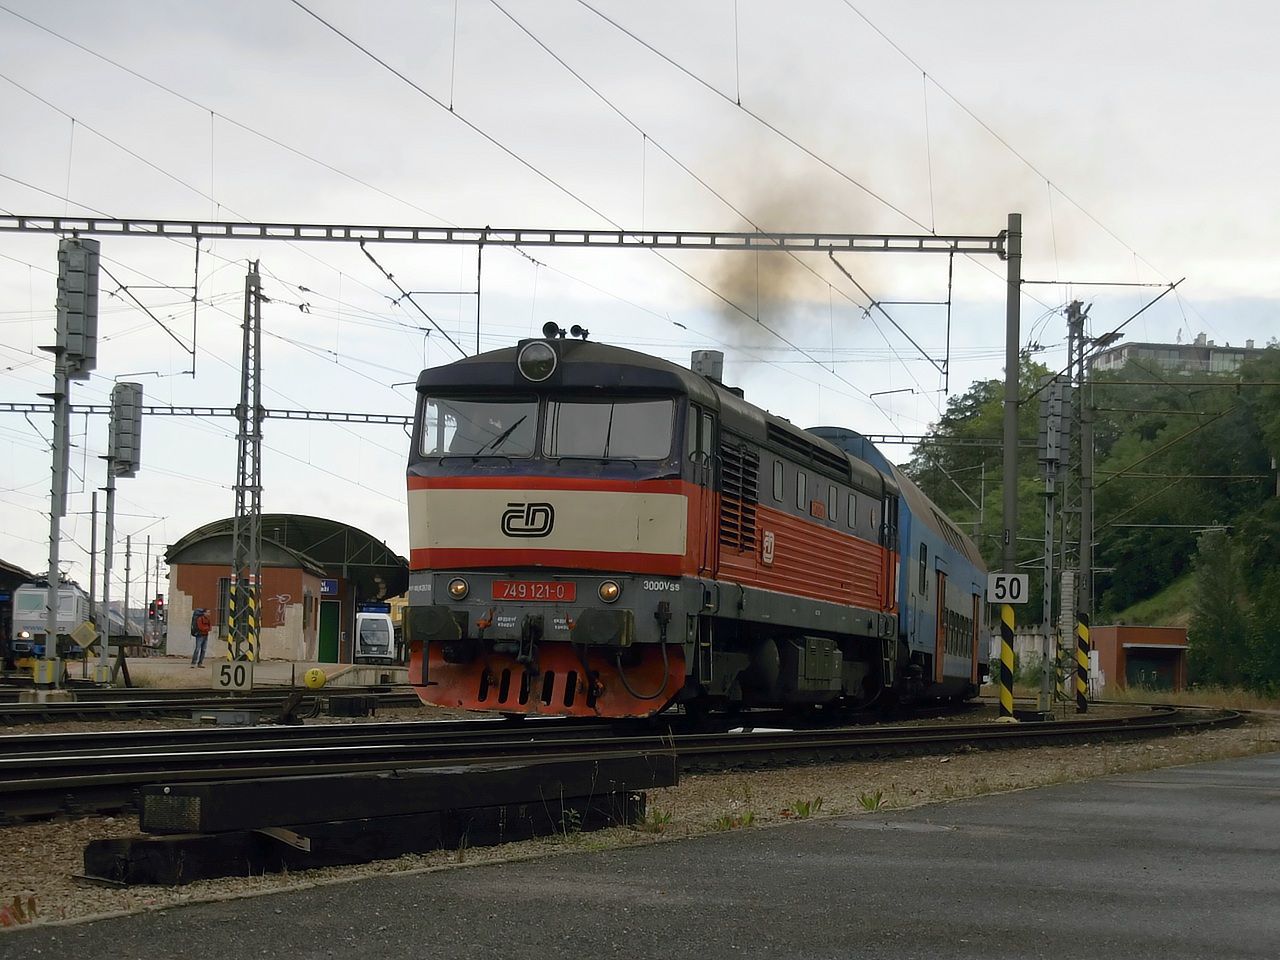 Os 9055 11. 8. 2012 veden lokomotivou 749.121-0 odjd z Prahy - Hlavnho ndra